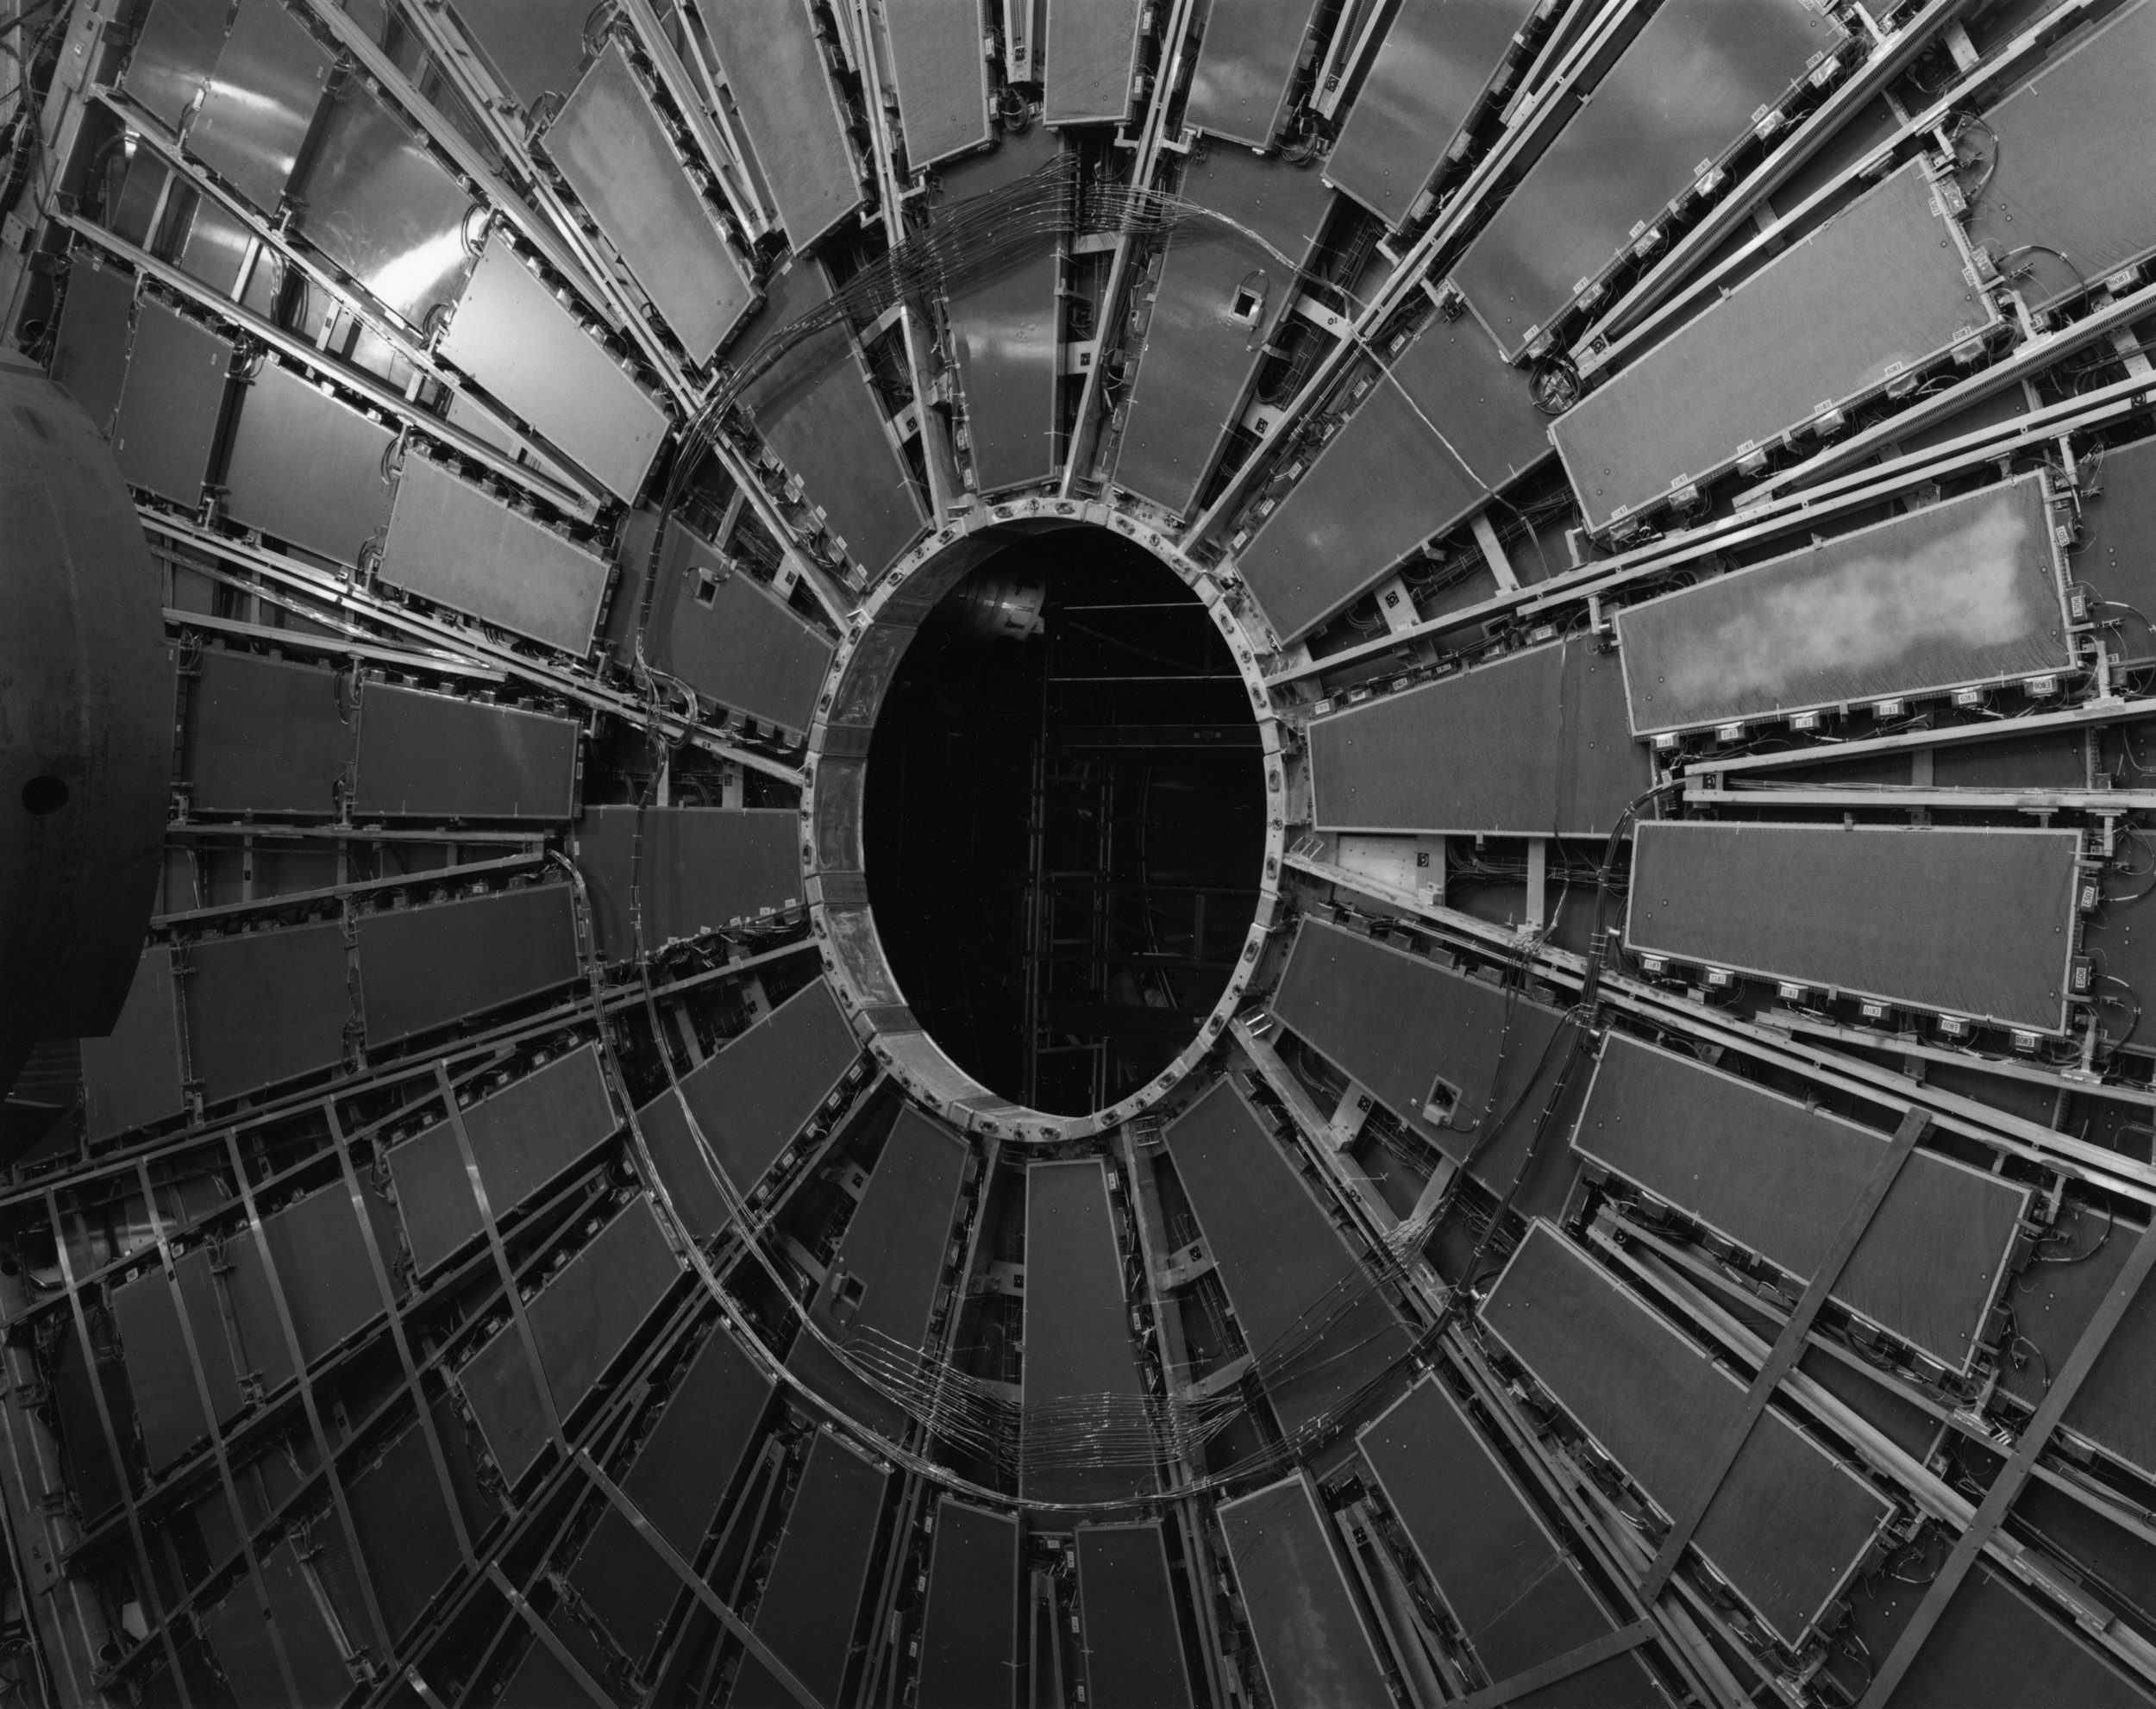 TGC Wheel, ATLAS Muon Spectrometer, Large Hadron Collider, CERN, Switzerland, 2006